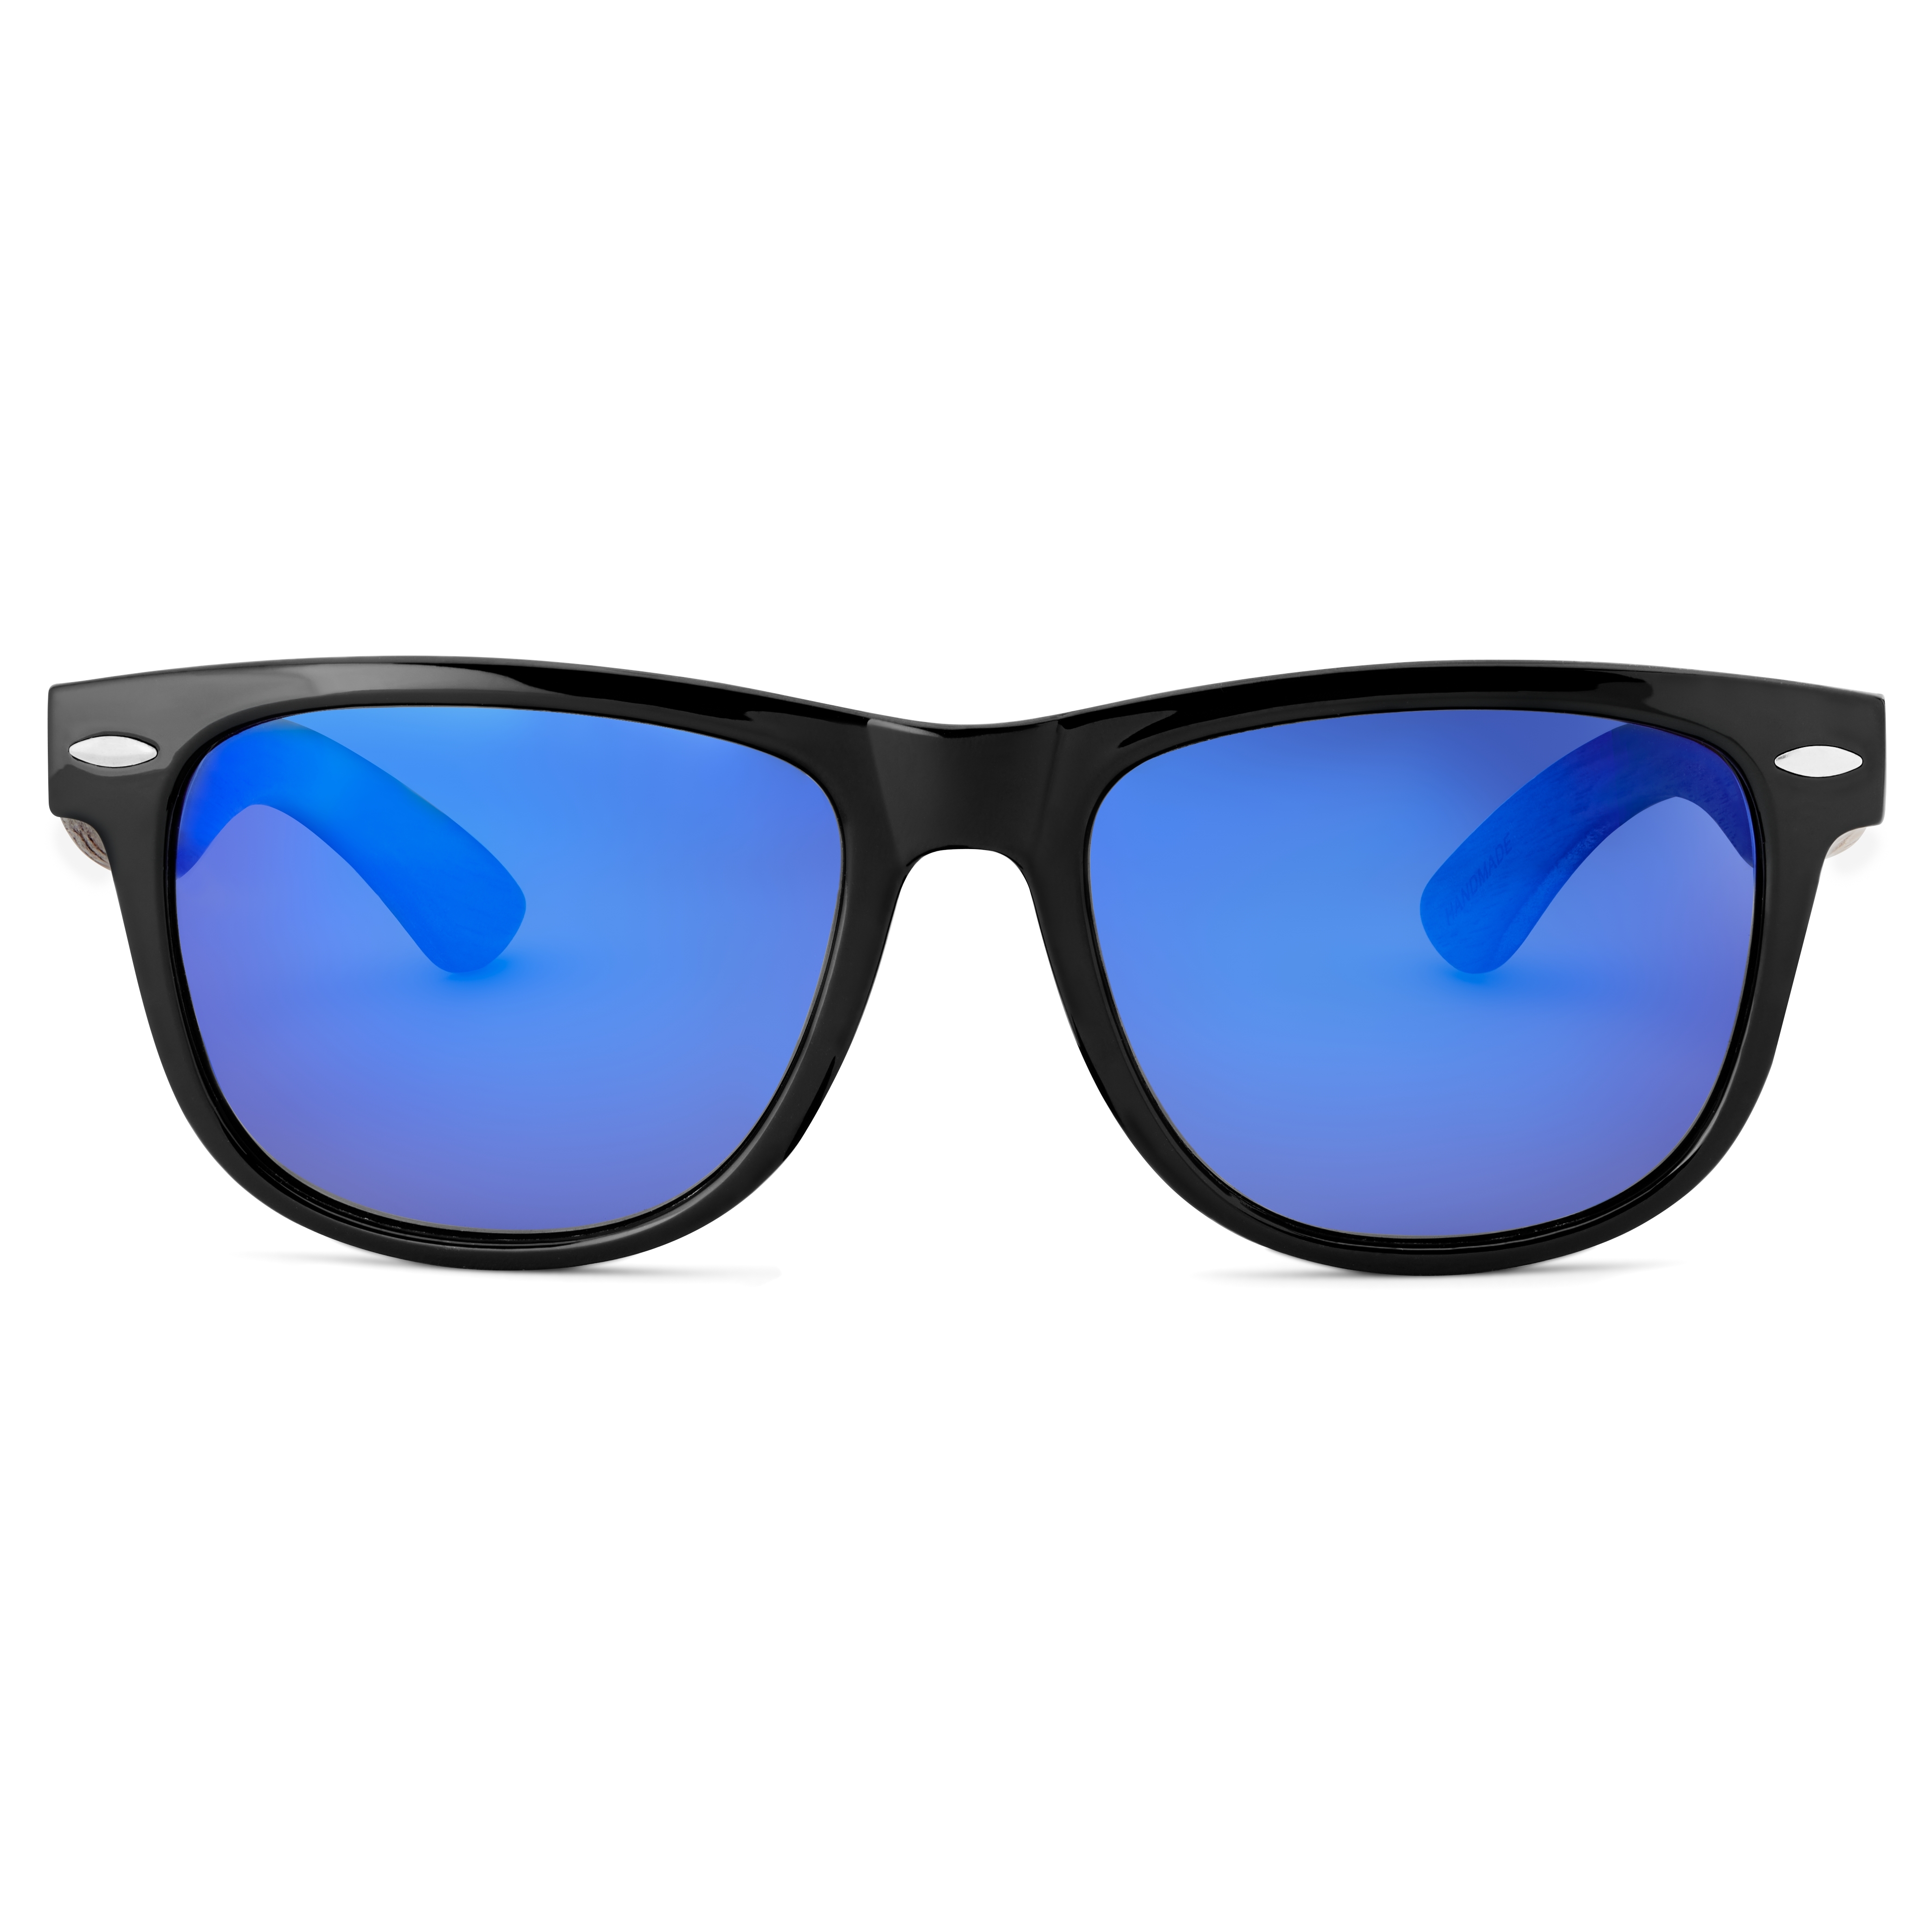 & Blå Retro Polariserede Solbriller med Brillestænger i Træ | lager! | Waykins